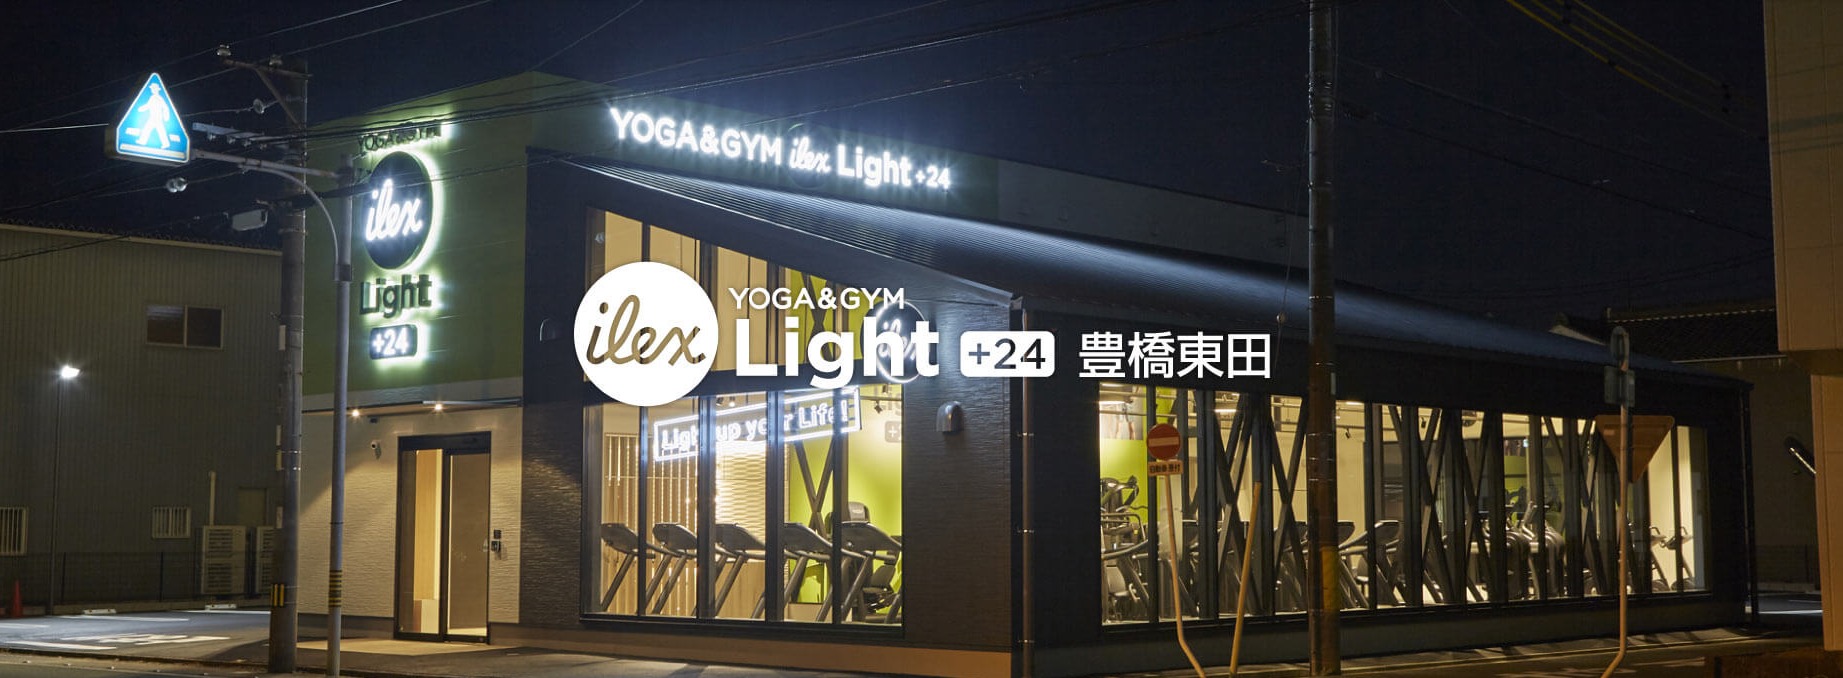 アイレクス・ライト+24豊橋東田の施設画像